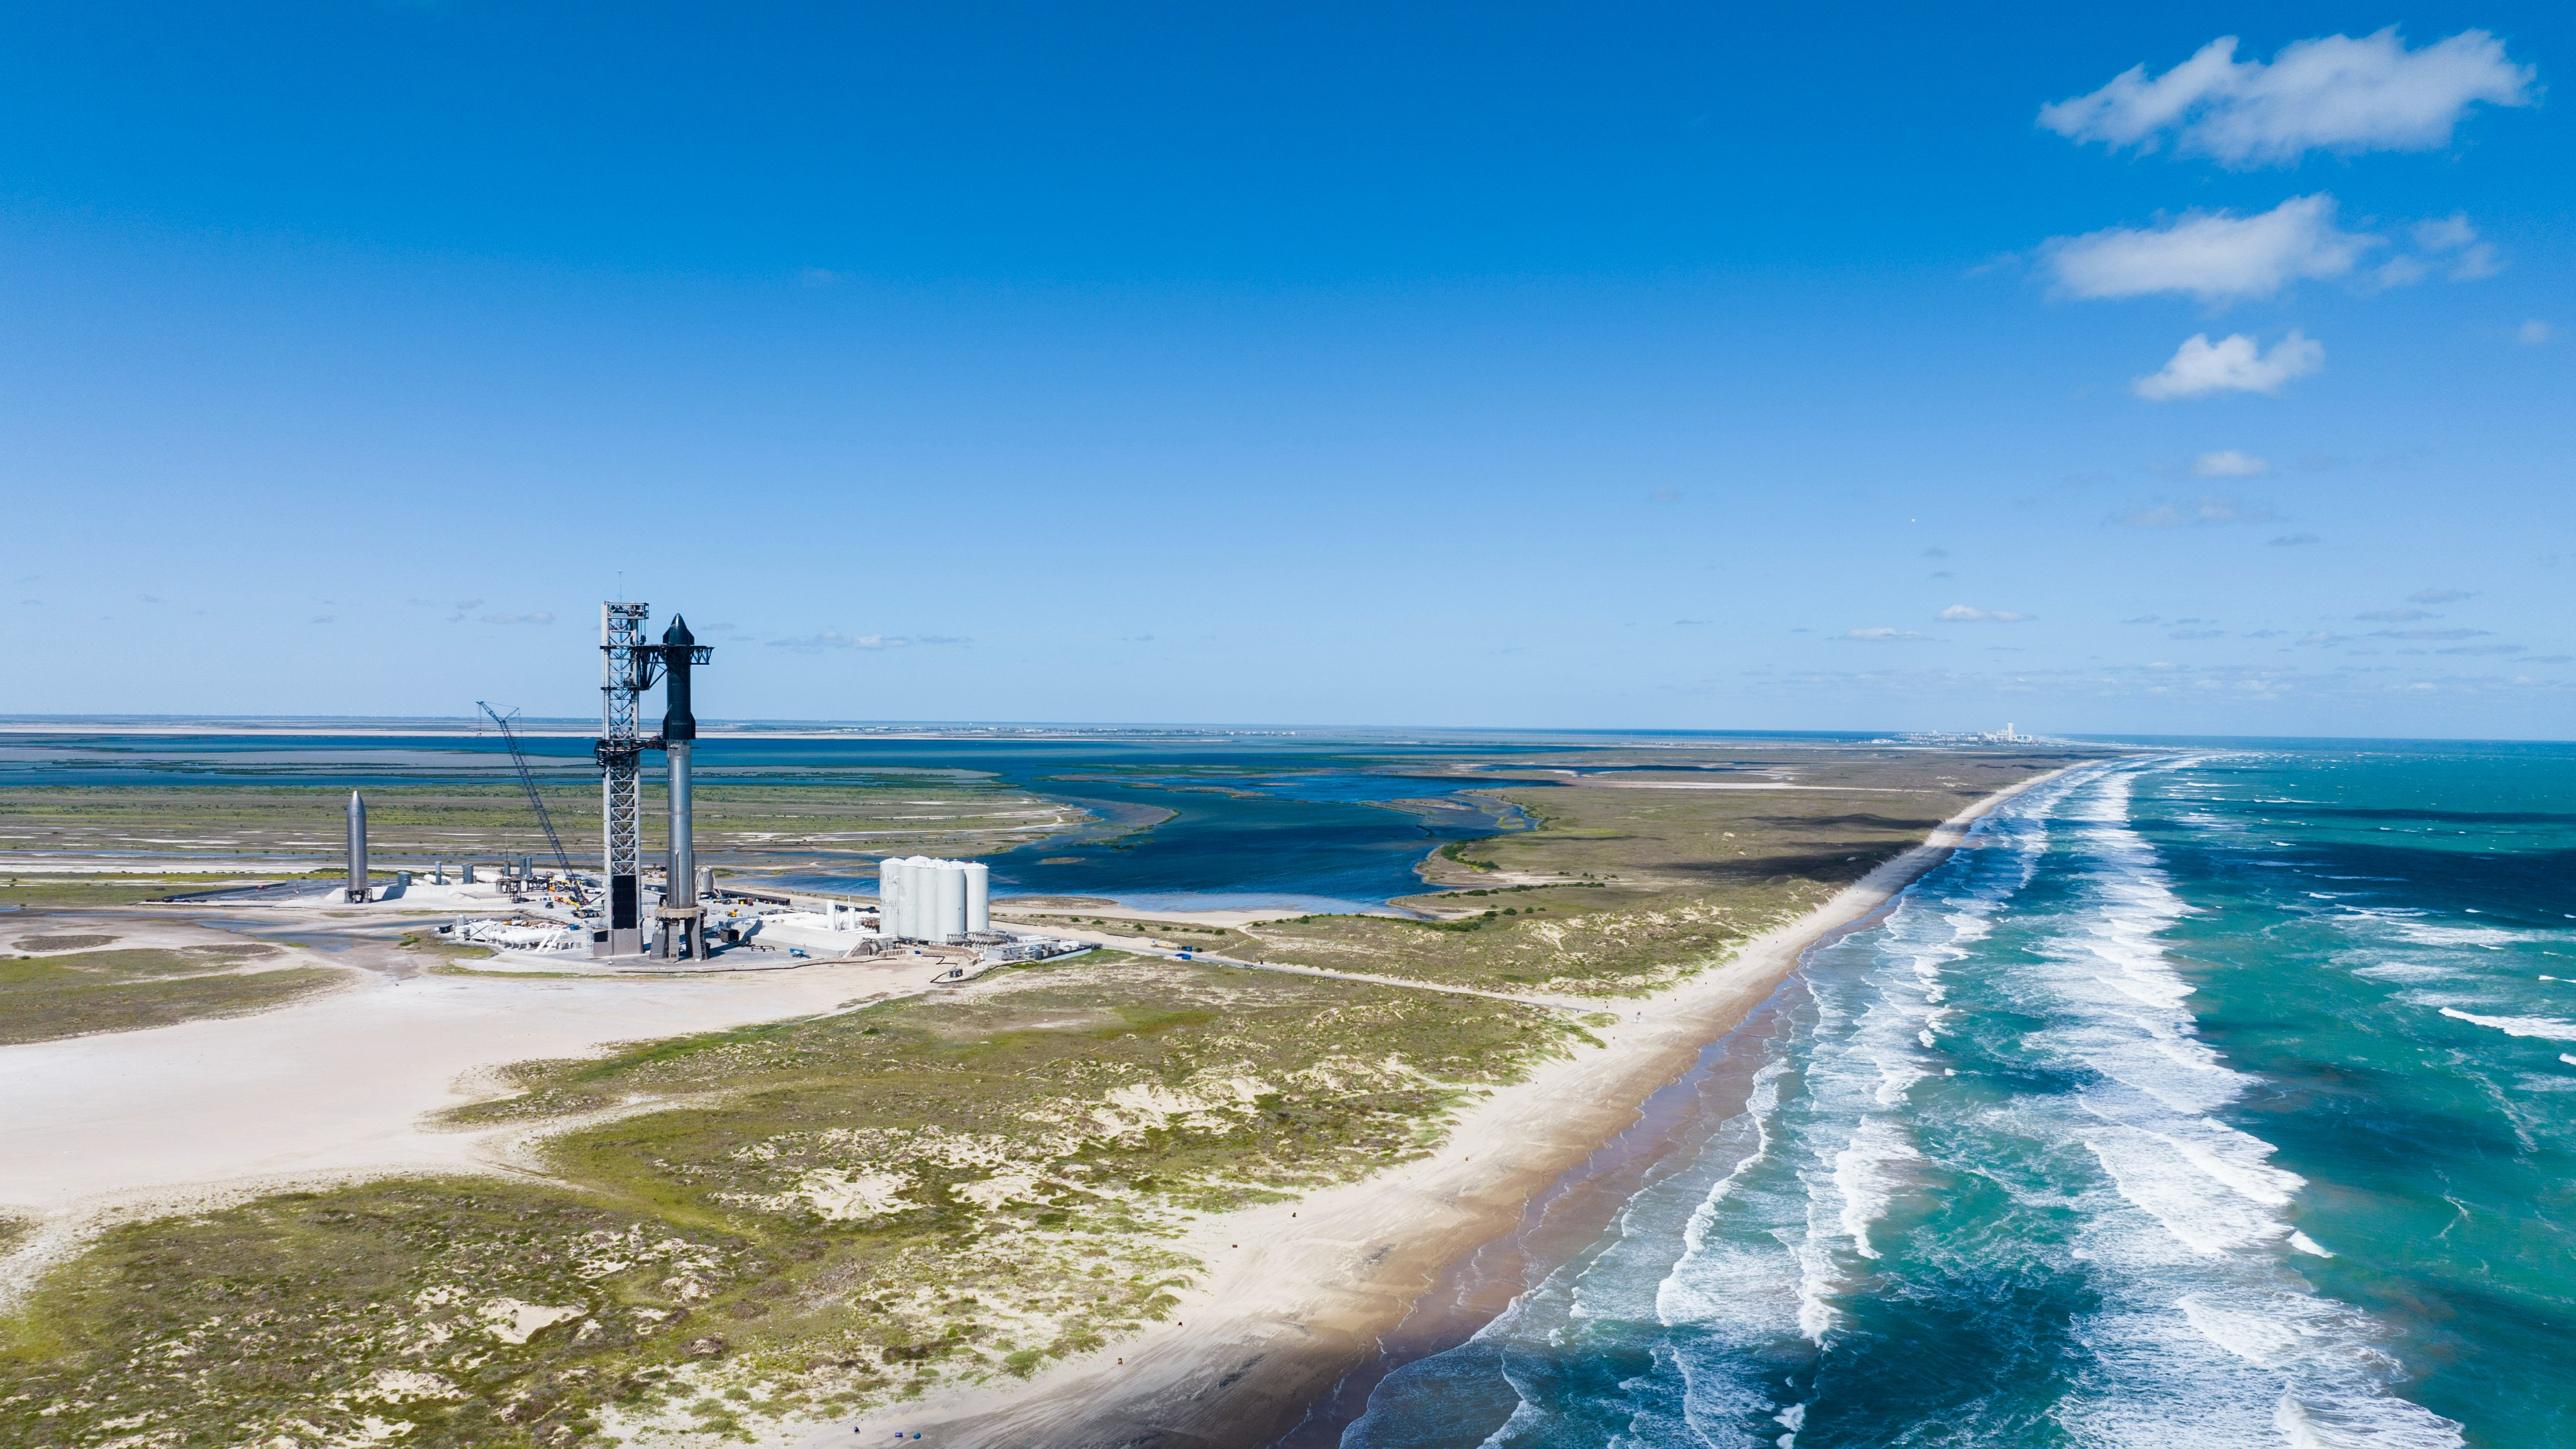 El cohete de acero inoxidable de Spacex se encuentra en su plataforma de lanzamiento con las aguas turquesas del golfo de México cerca.